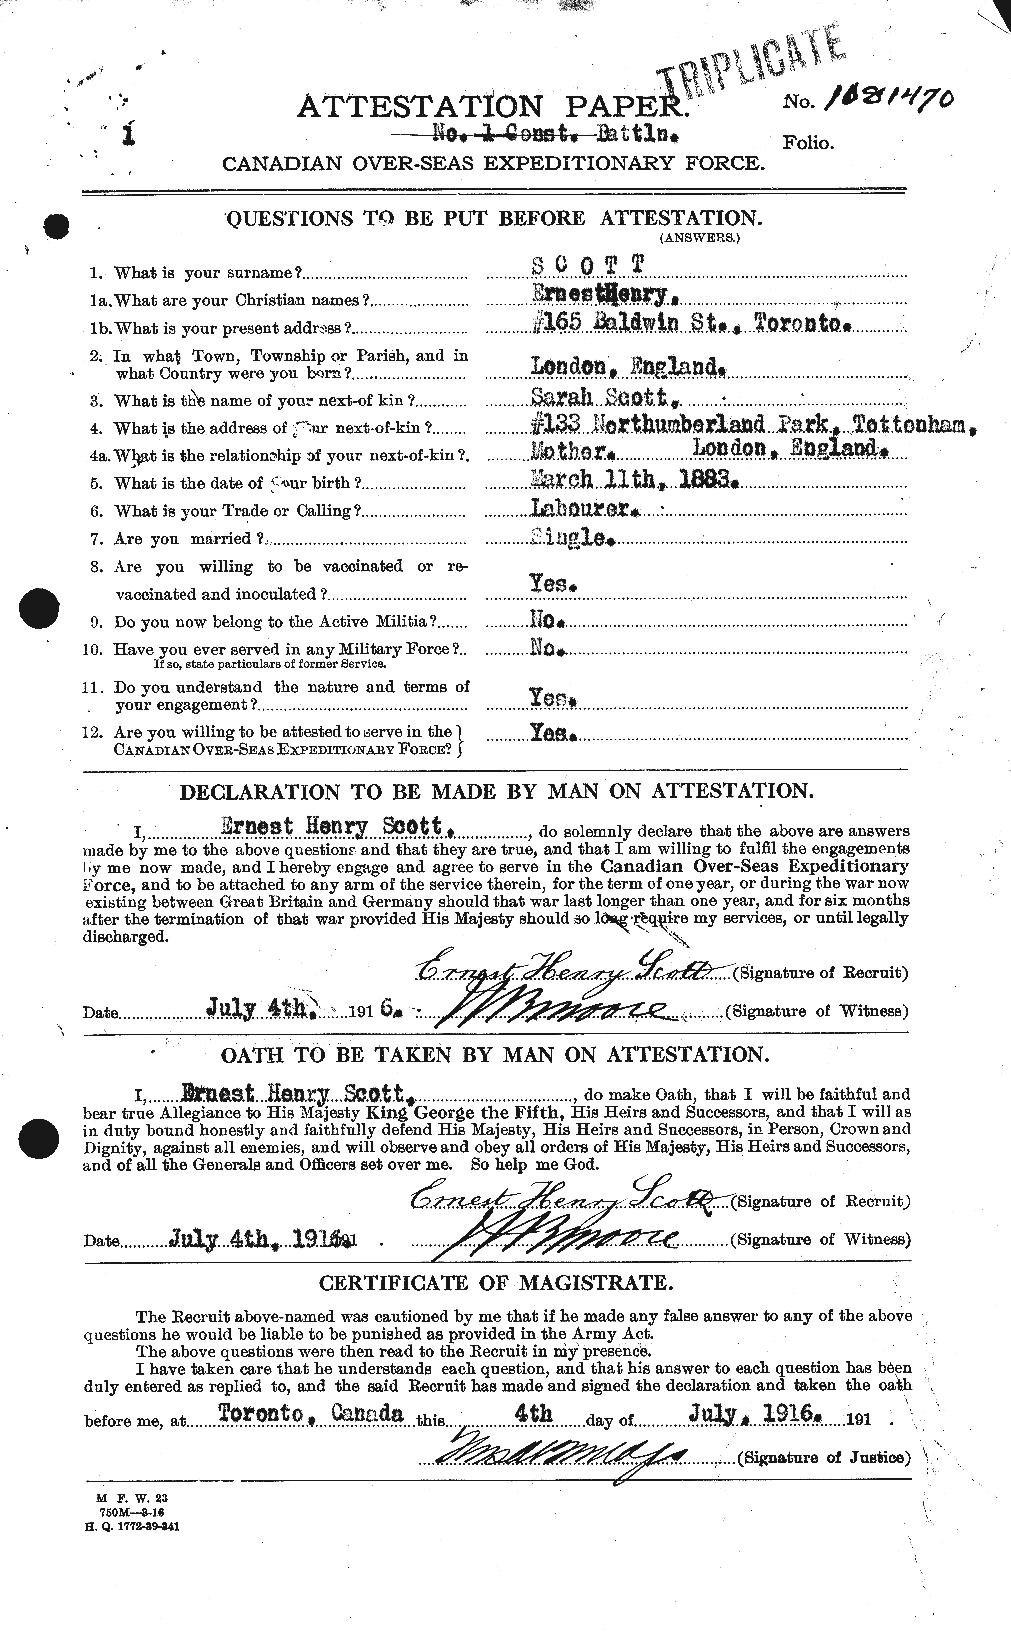 Dossiers du Personnel de la Première Guerre mondiale - CEC 085010a